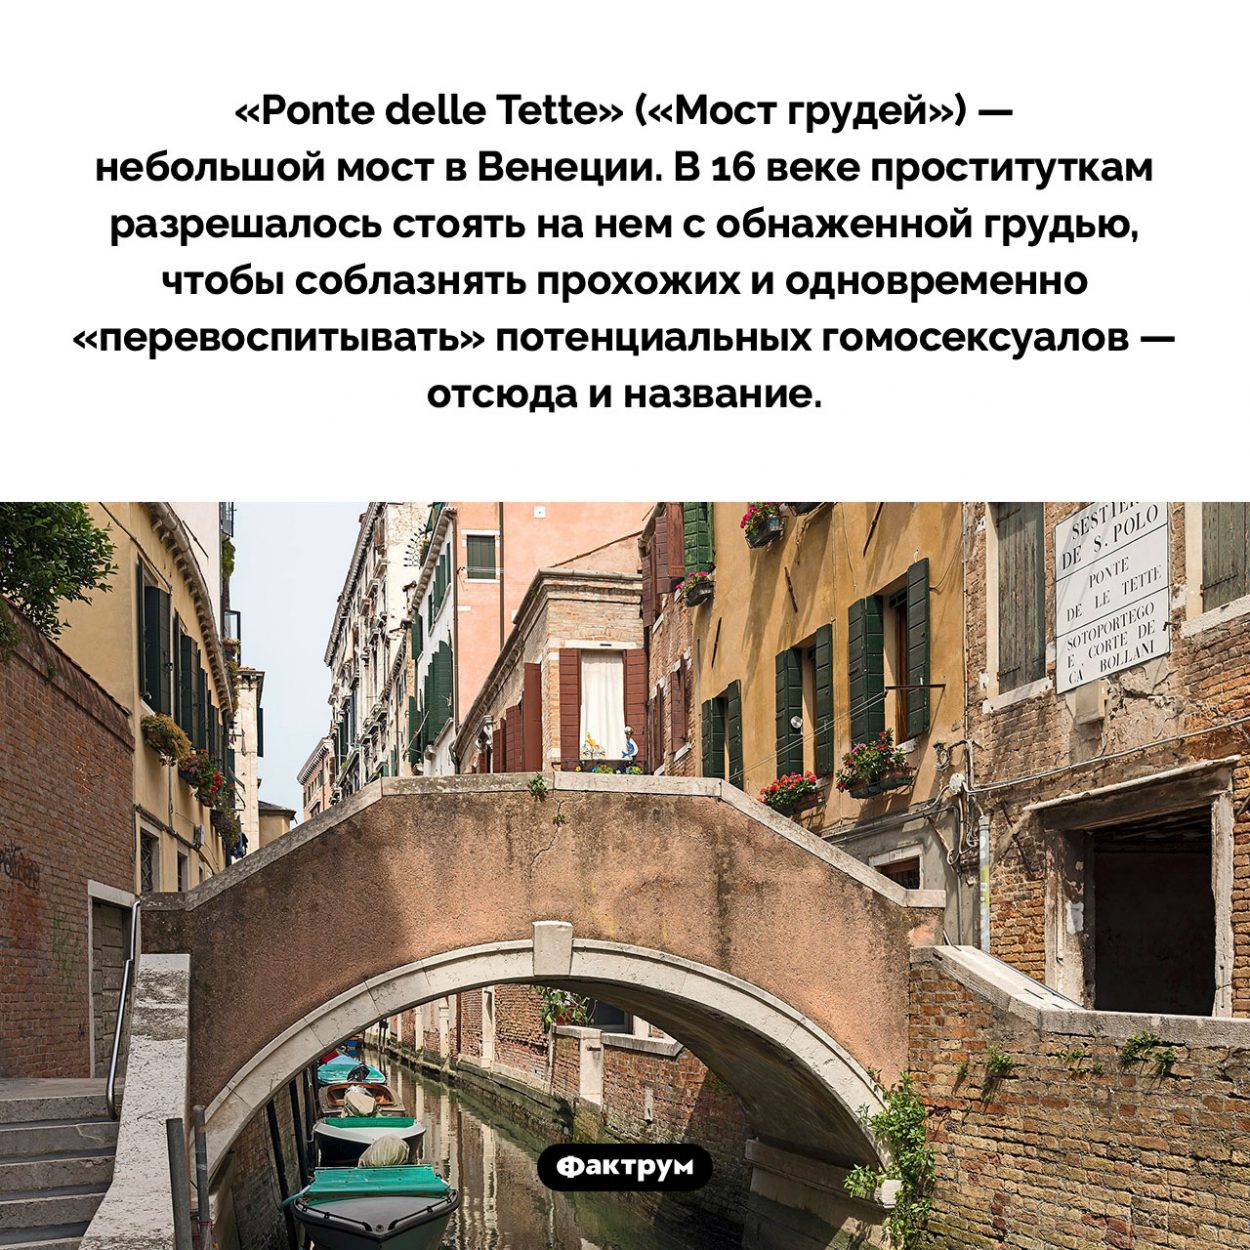 «Мост грудей» в Венеции. «Ponte delle Tette» («Мост грудей») — небольшой мост в Венеции. В 16 веке проституткам разрешалось стоять на нем с обнаженной грудью, чтобы соблазнять прохожих и одновременно «перевоспитывать» потенциальных гомосексуалов — отсюда и название.